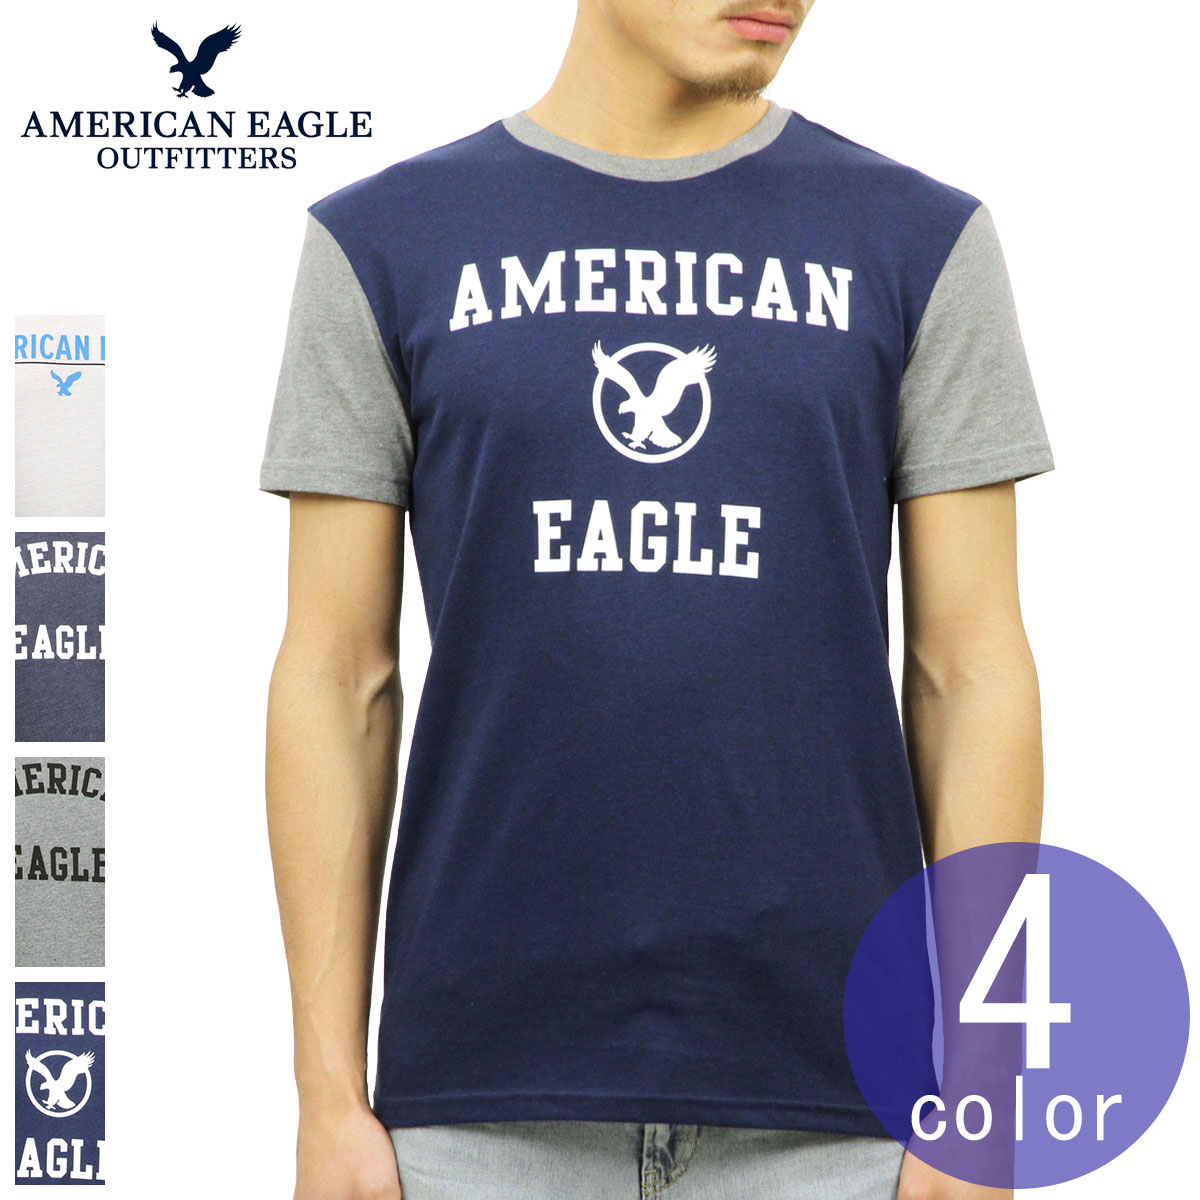 アメリカンイーグル AMERICAN EAGLE 正規品 メンズ USAモデル クルーネック 半袖Tシャツ AE GRAPHIC TEE 父の日 ギフト プレゼント